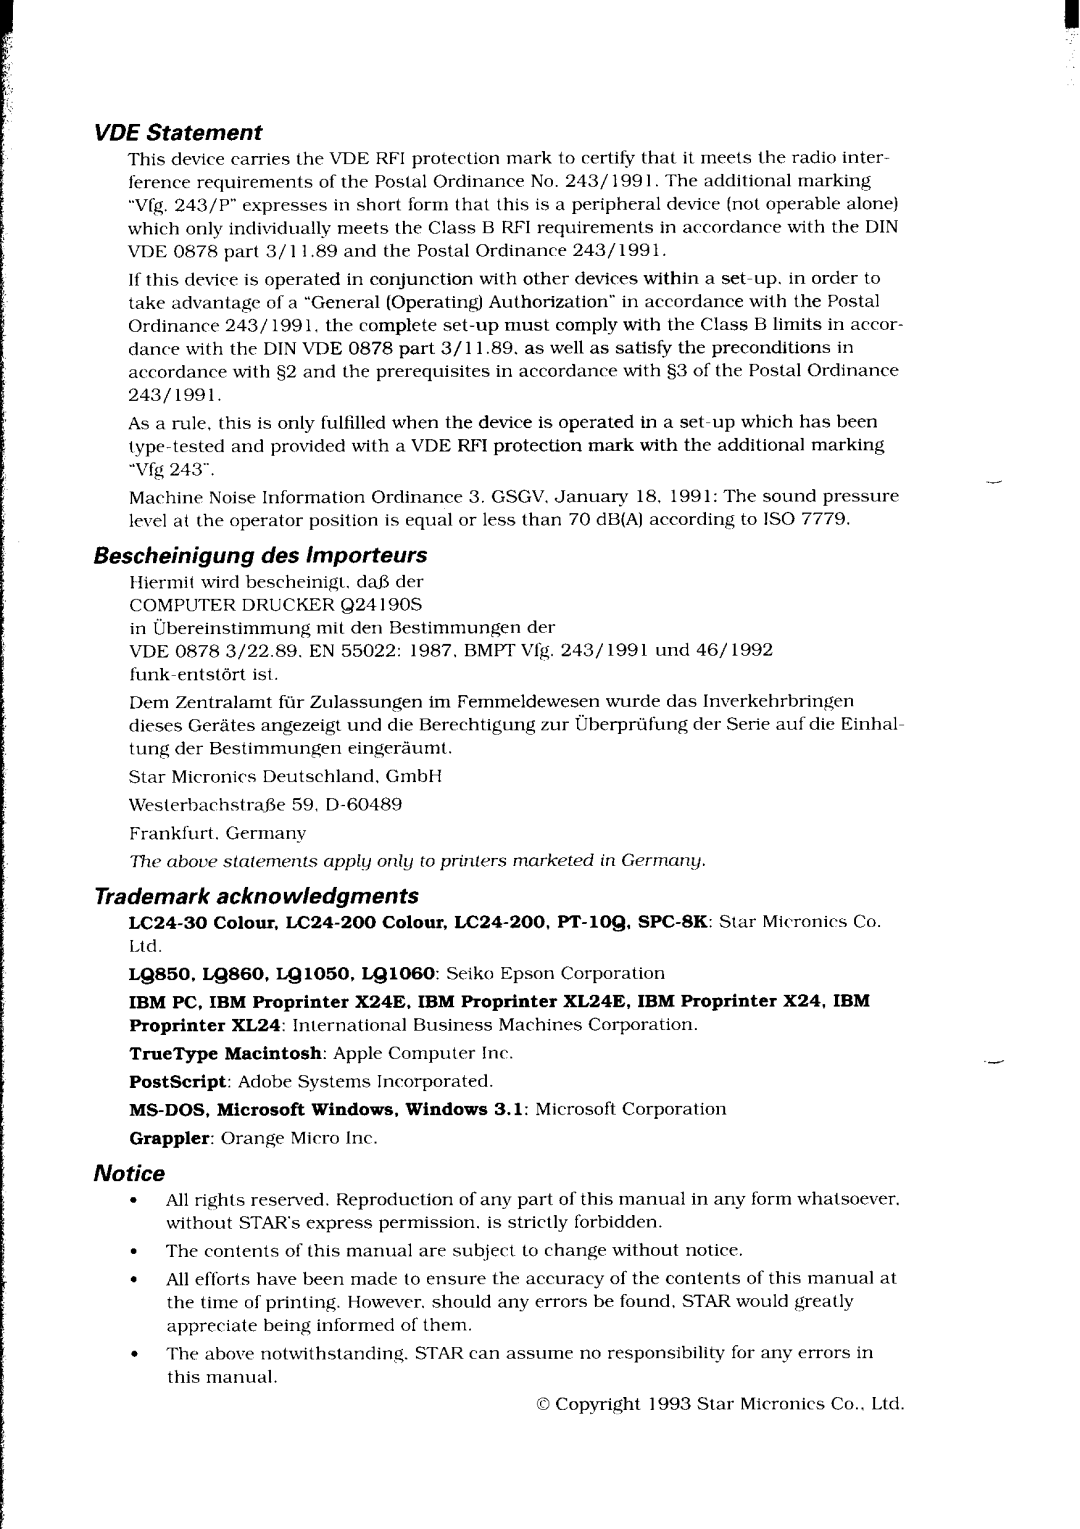 Star Micronics LC24-30 user manual VDE Statement, Bescheinigung des lmporteurs, Trademark acknowledgments 